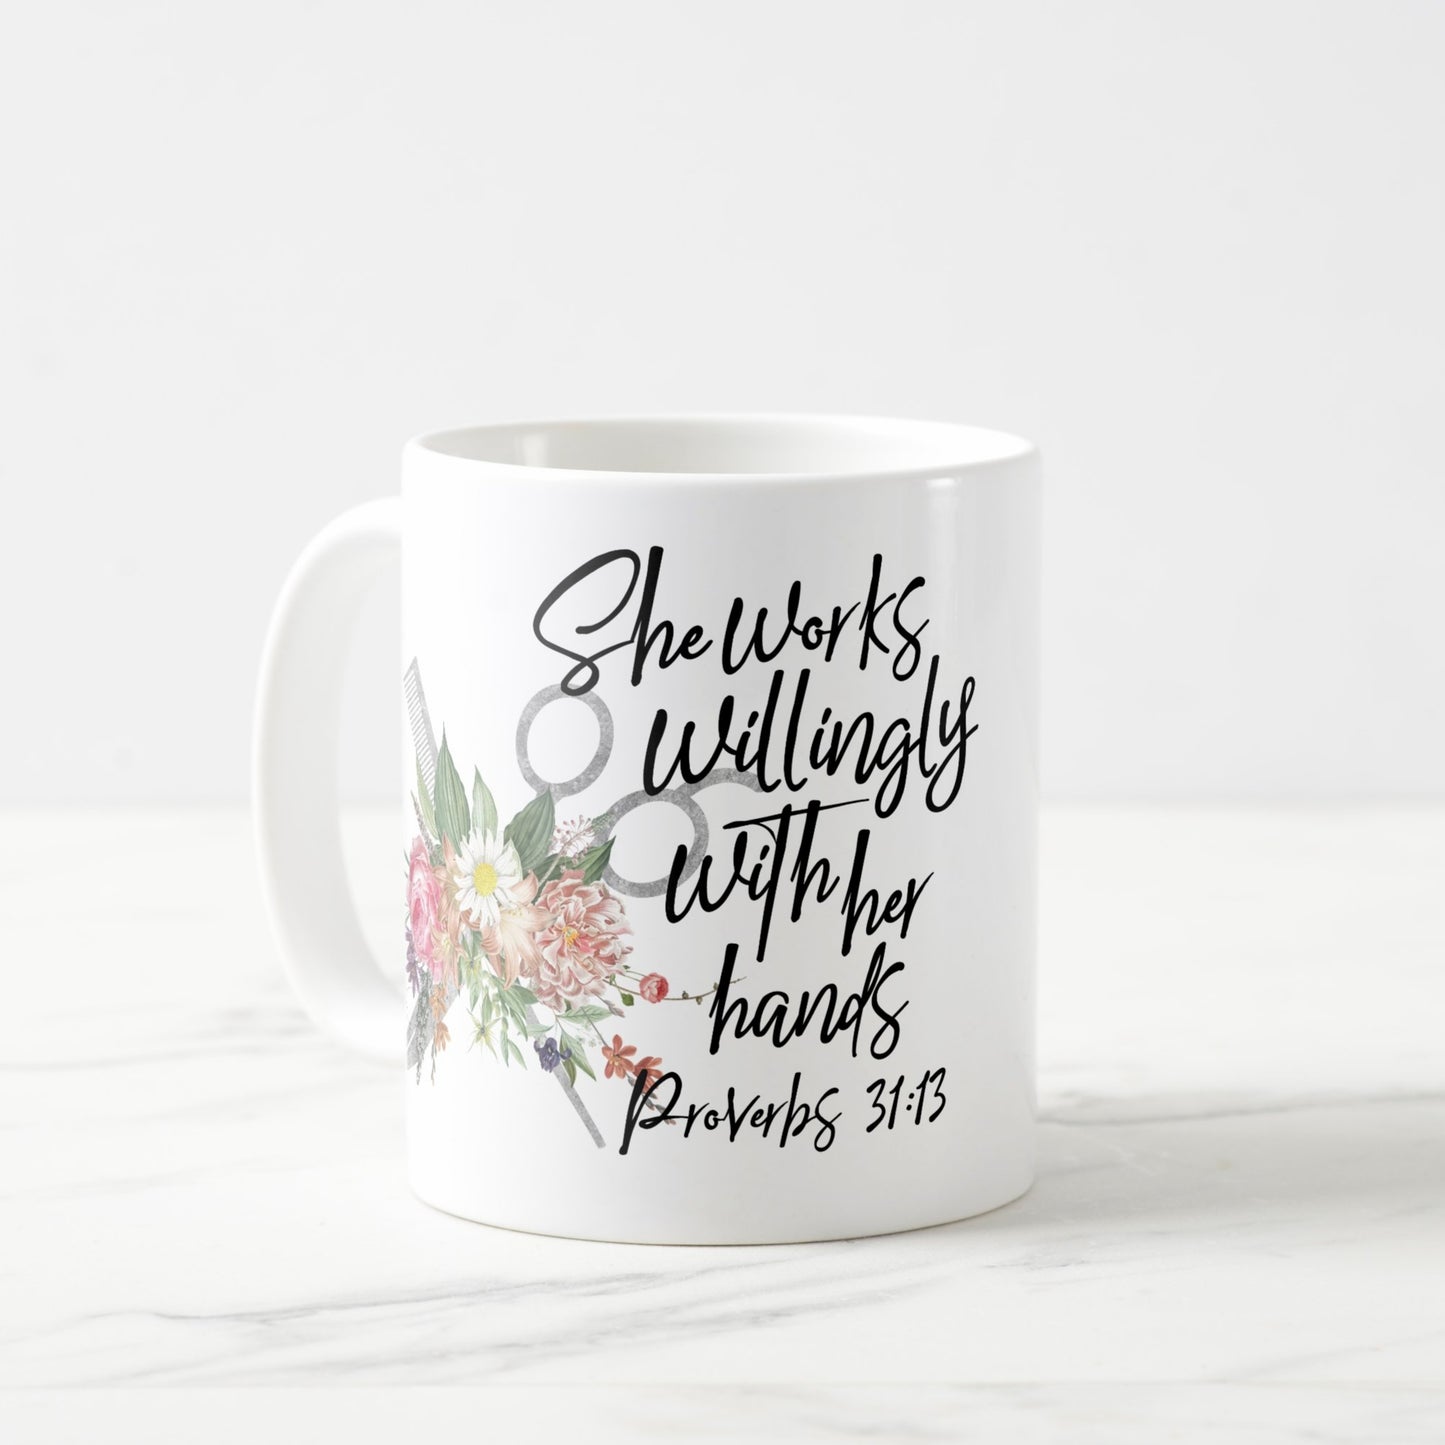 Proverbs 31:13 mugs